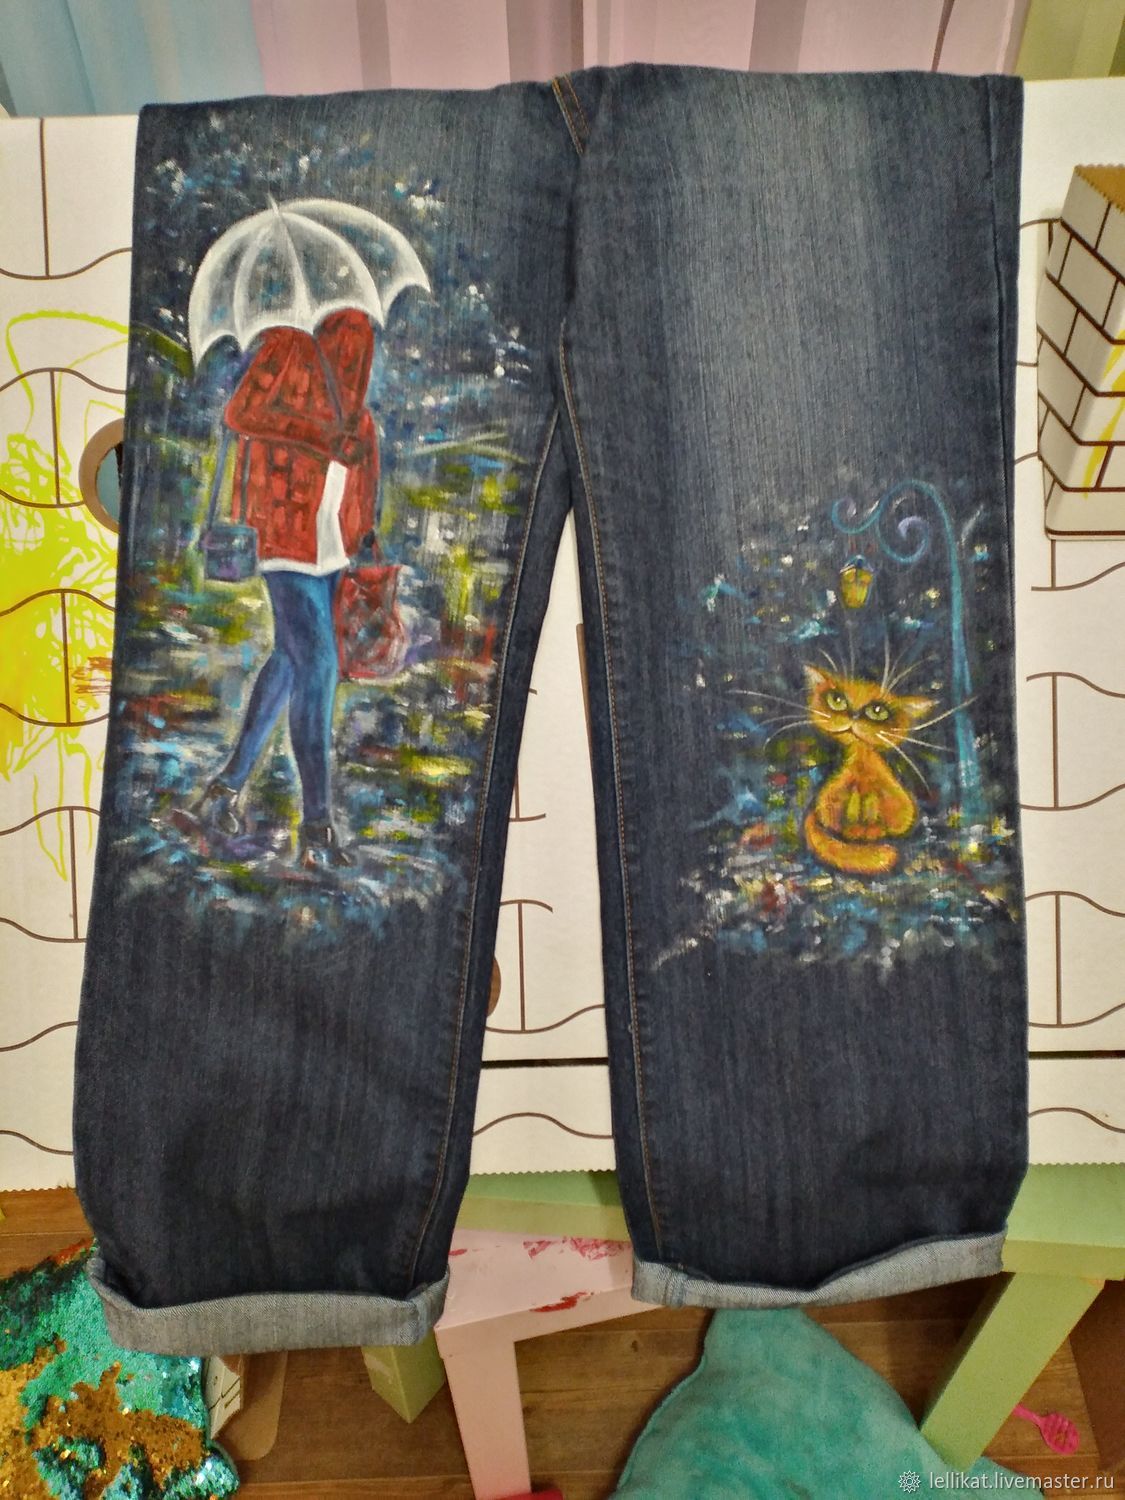 Роспись в джинсах